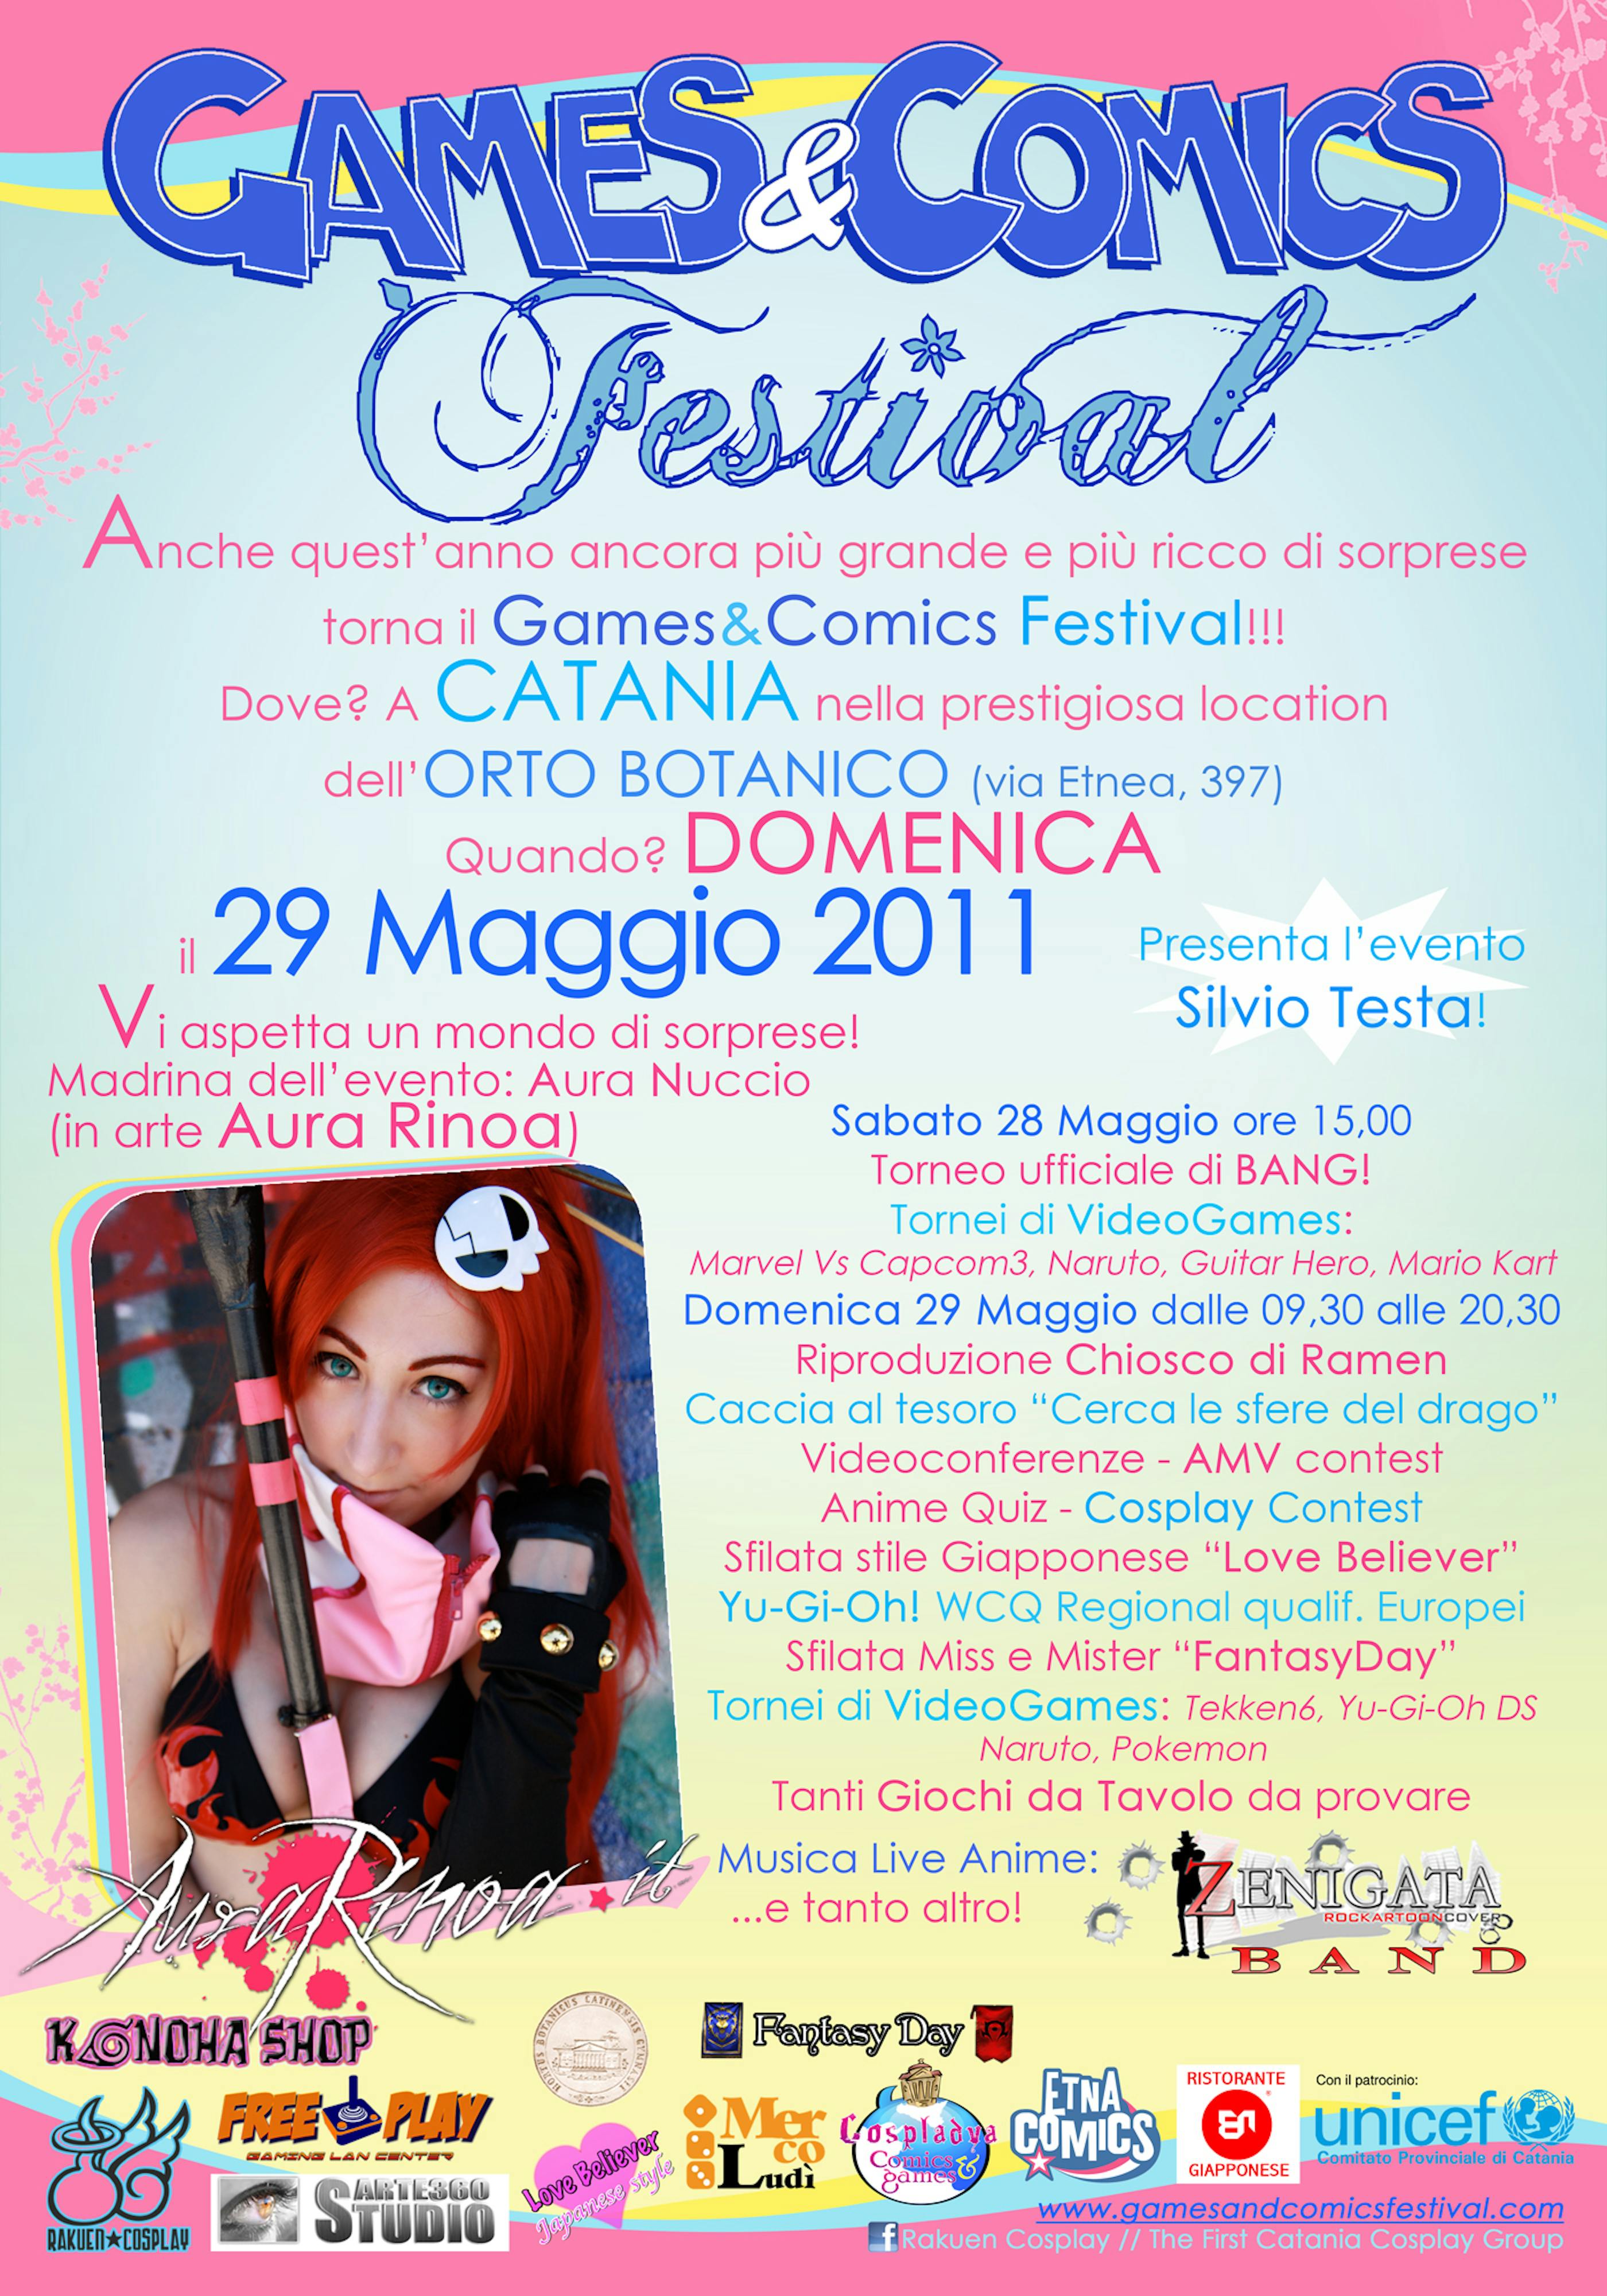 A Catania: Orto Botanico, Games & Comics Festival 2011